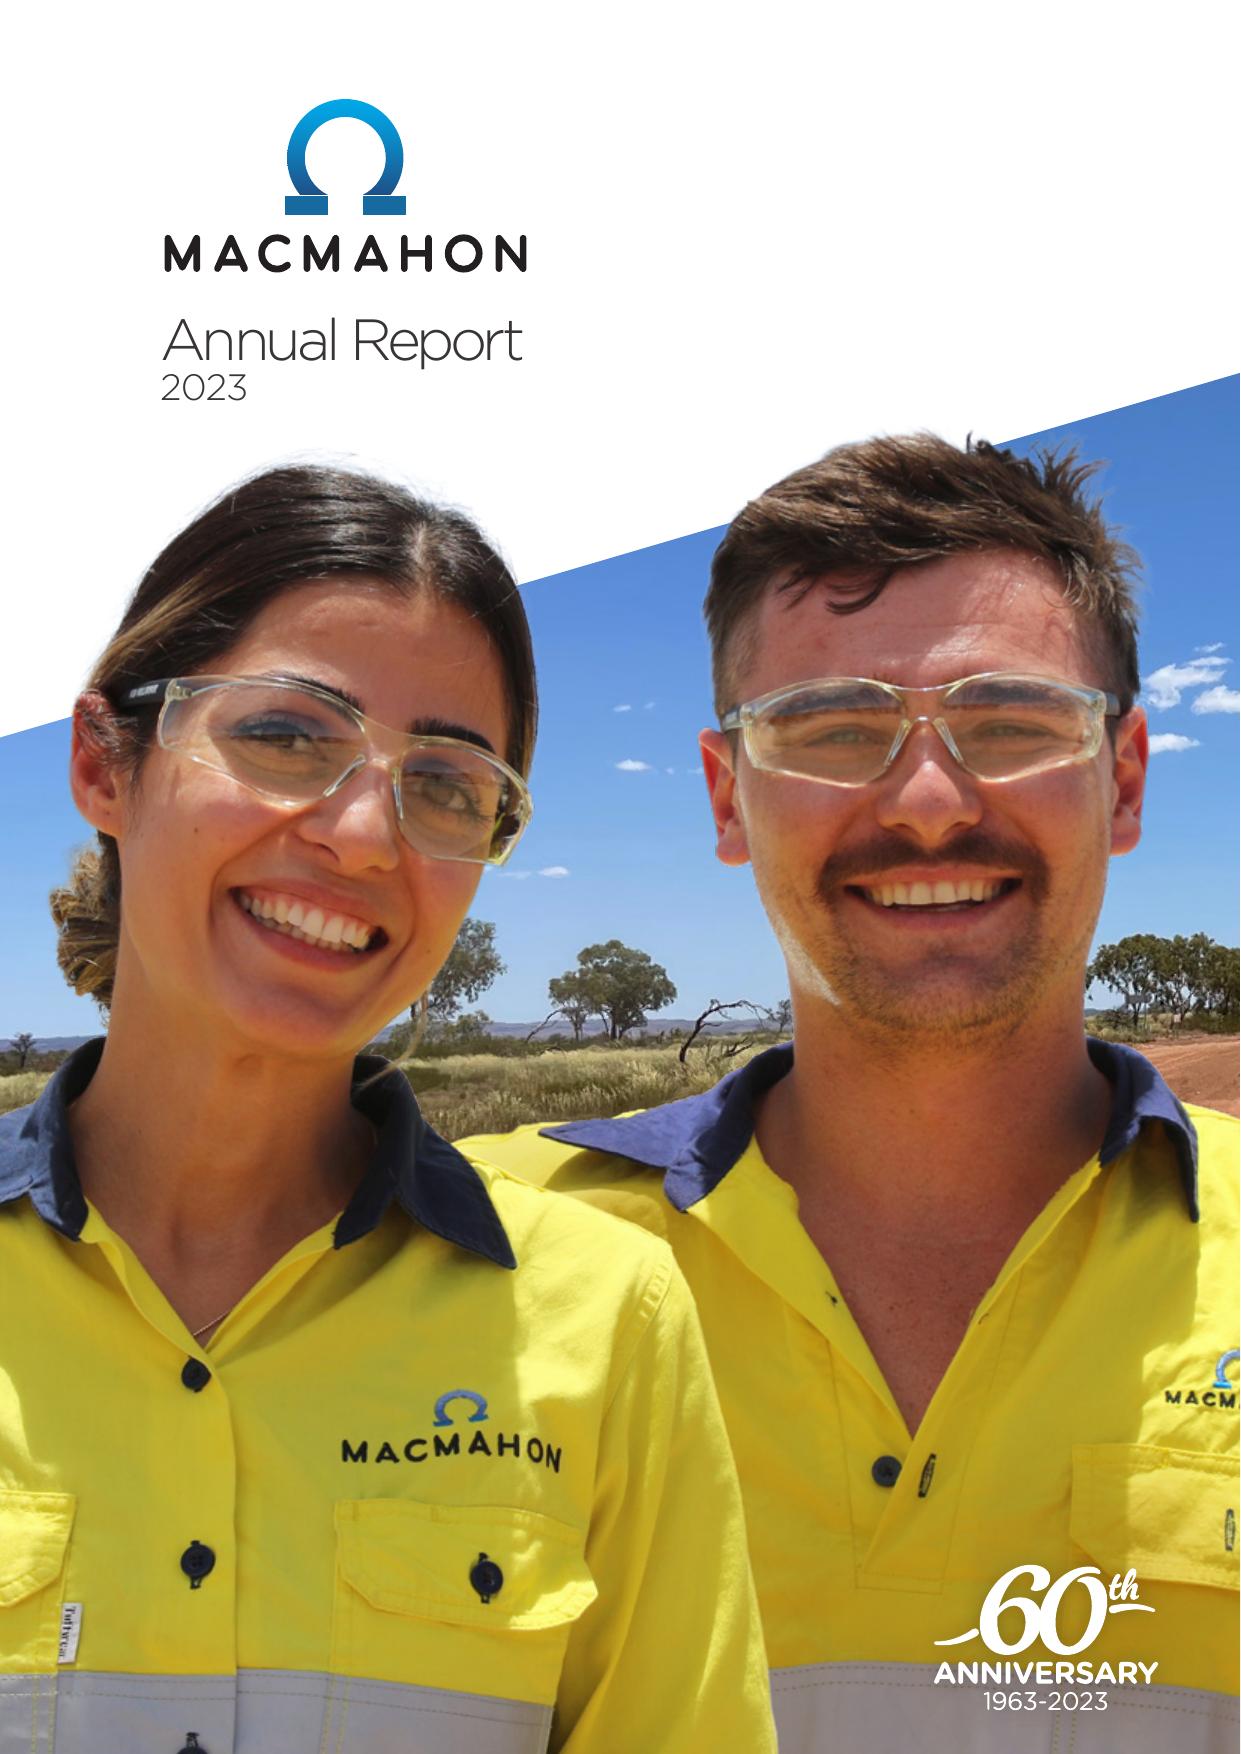 MACMAHON 2023 Annual Report